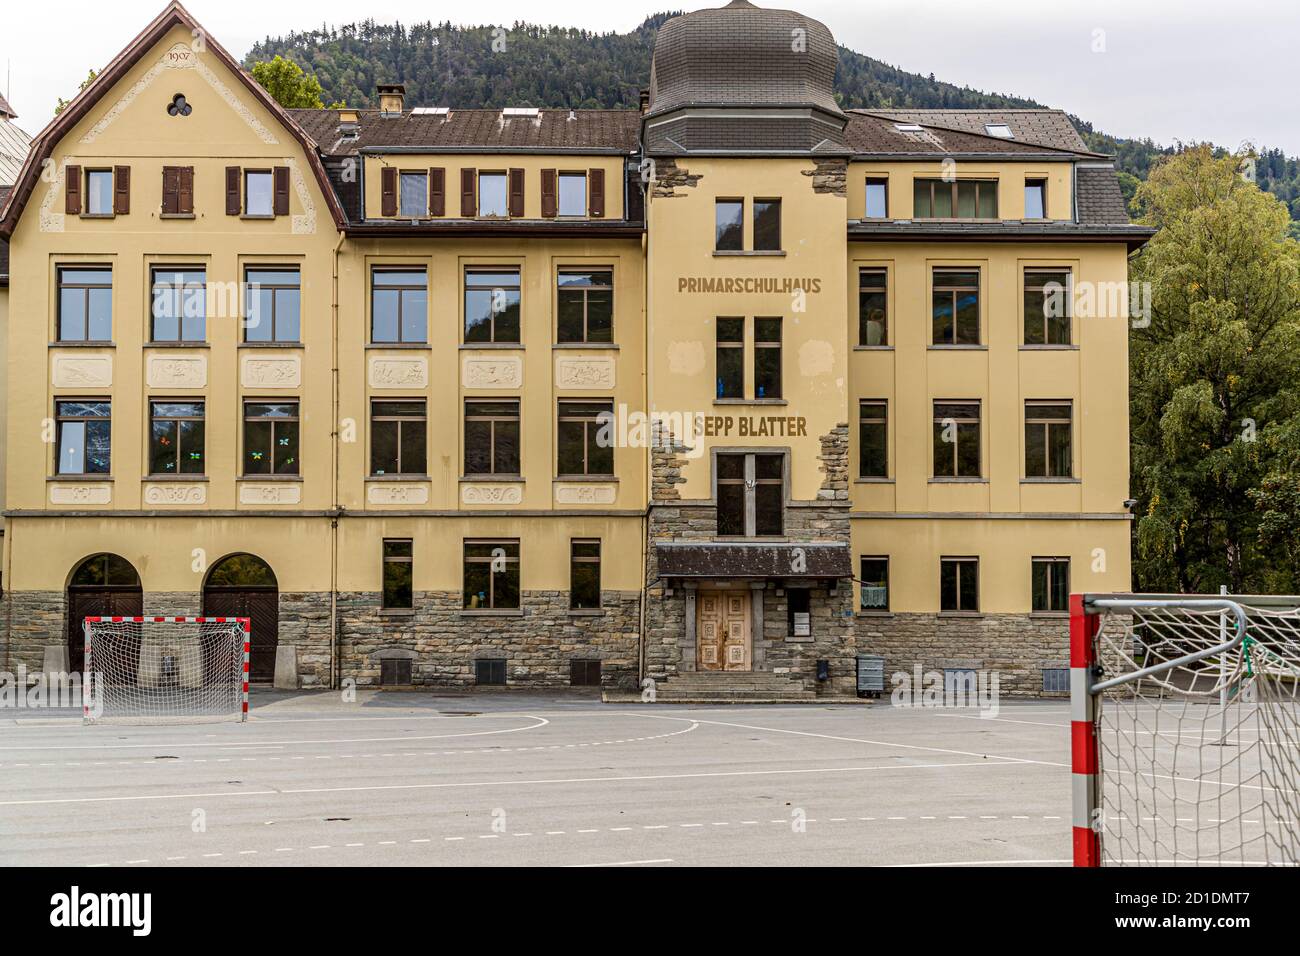 Grundschule benannt nach dem FIFA-Fußballoffizier Sepp Blatter in der Walliser Stadt Visp, Schweiz Stockfoto